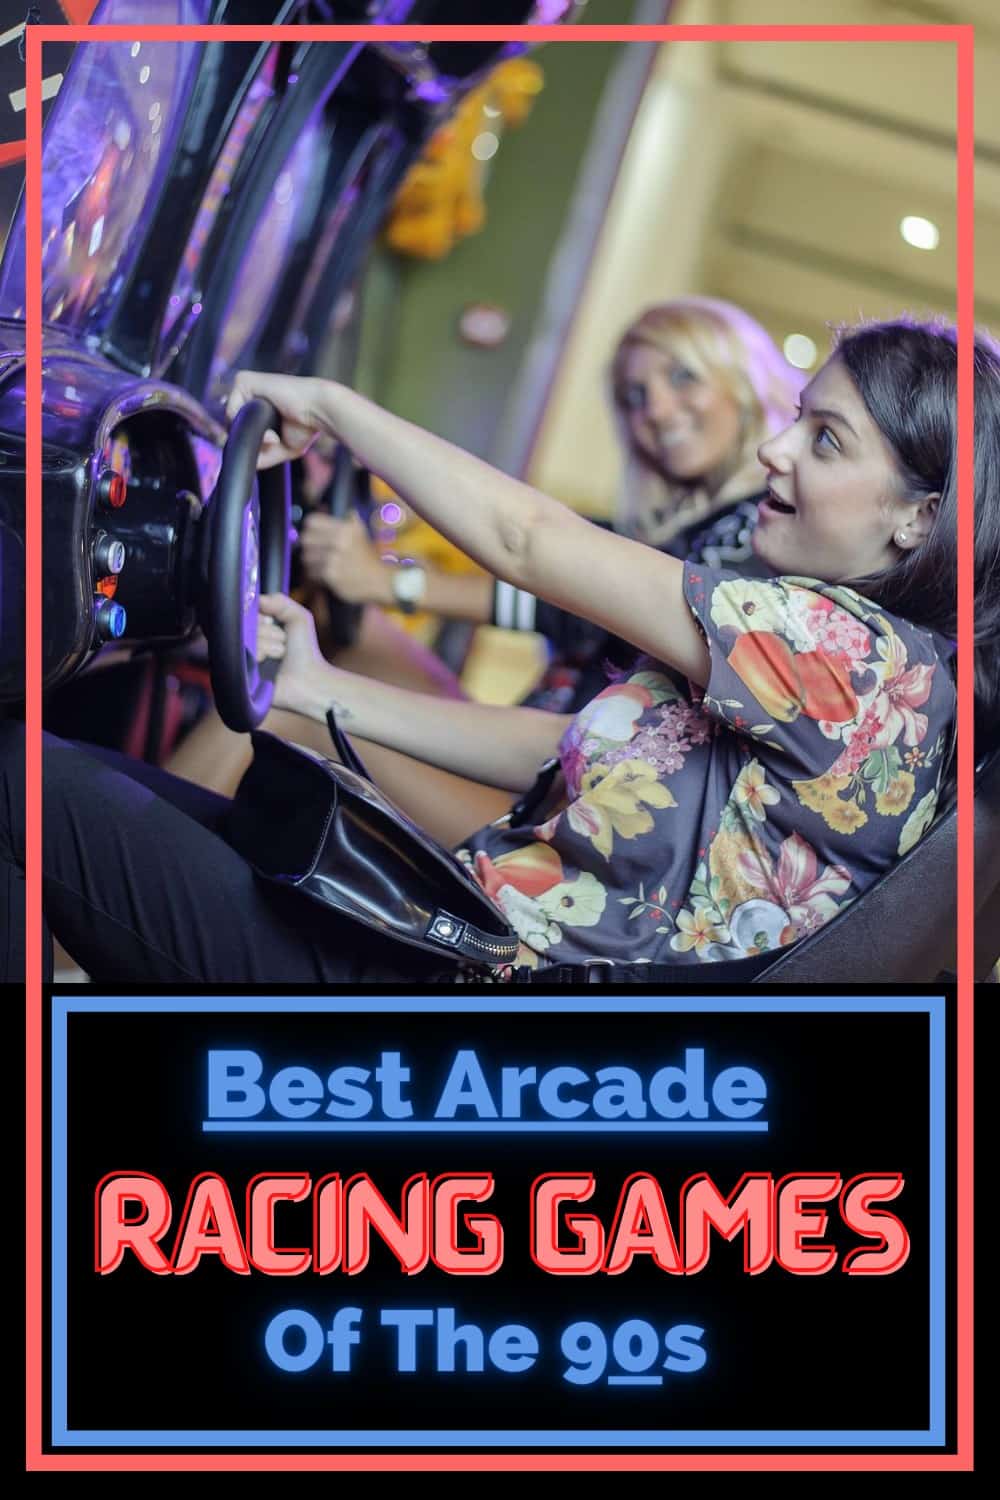 Best 90s Arcade Racing games